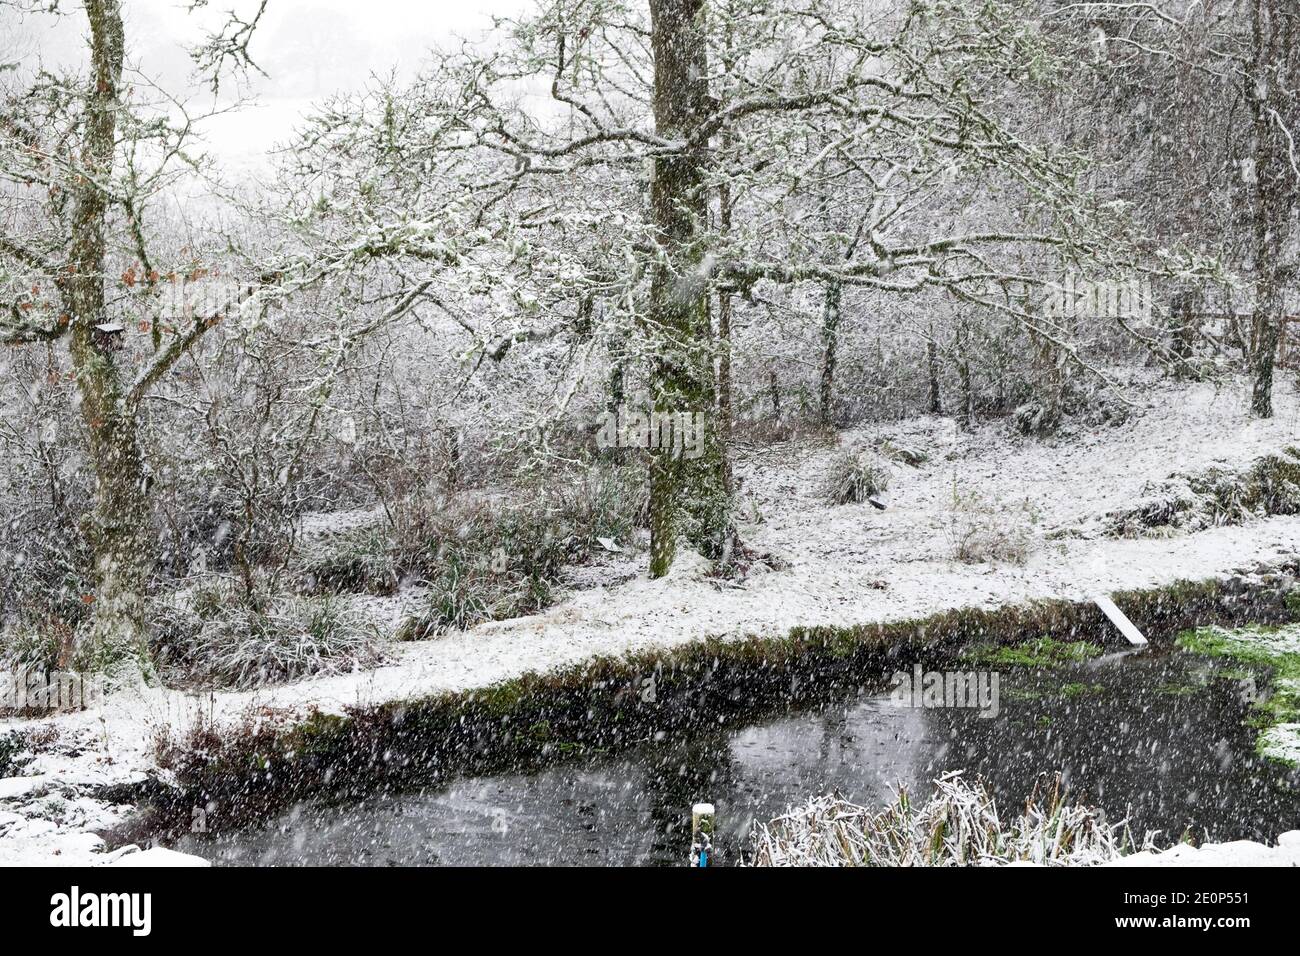 Vue sur les chutes de neige sur l'étang du jardin en hiver jardin paysage arbres décembre 2020 Carmarthenshire pays de Galles Royaume-Uni Grande-Bretagne KATHY DEWITT Banque D'Images